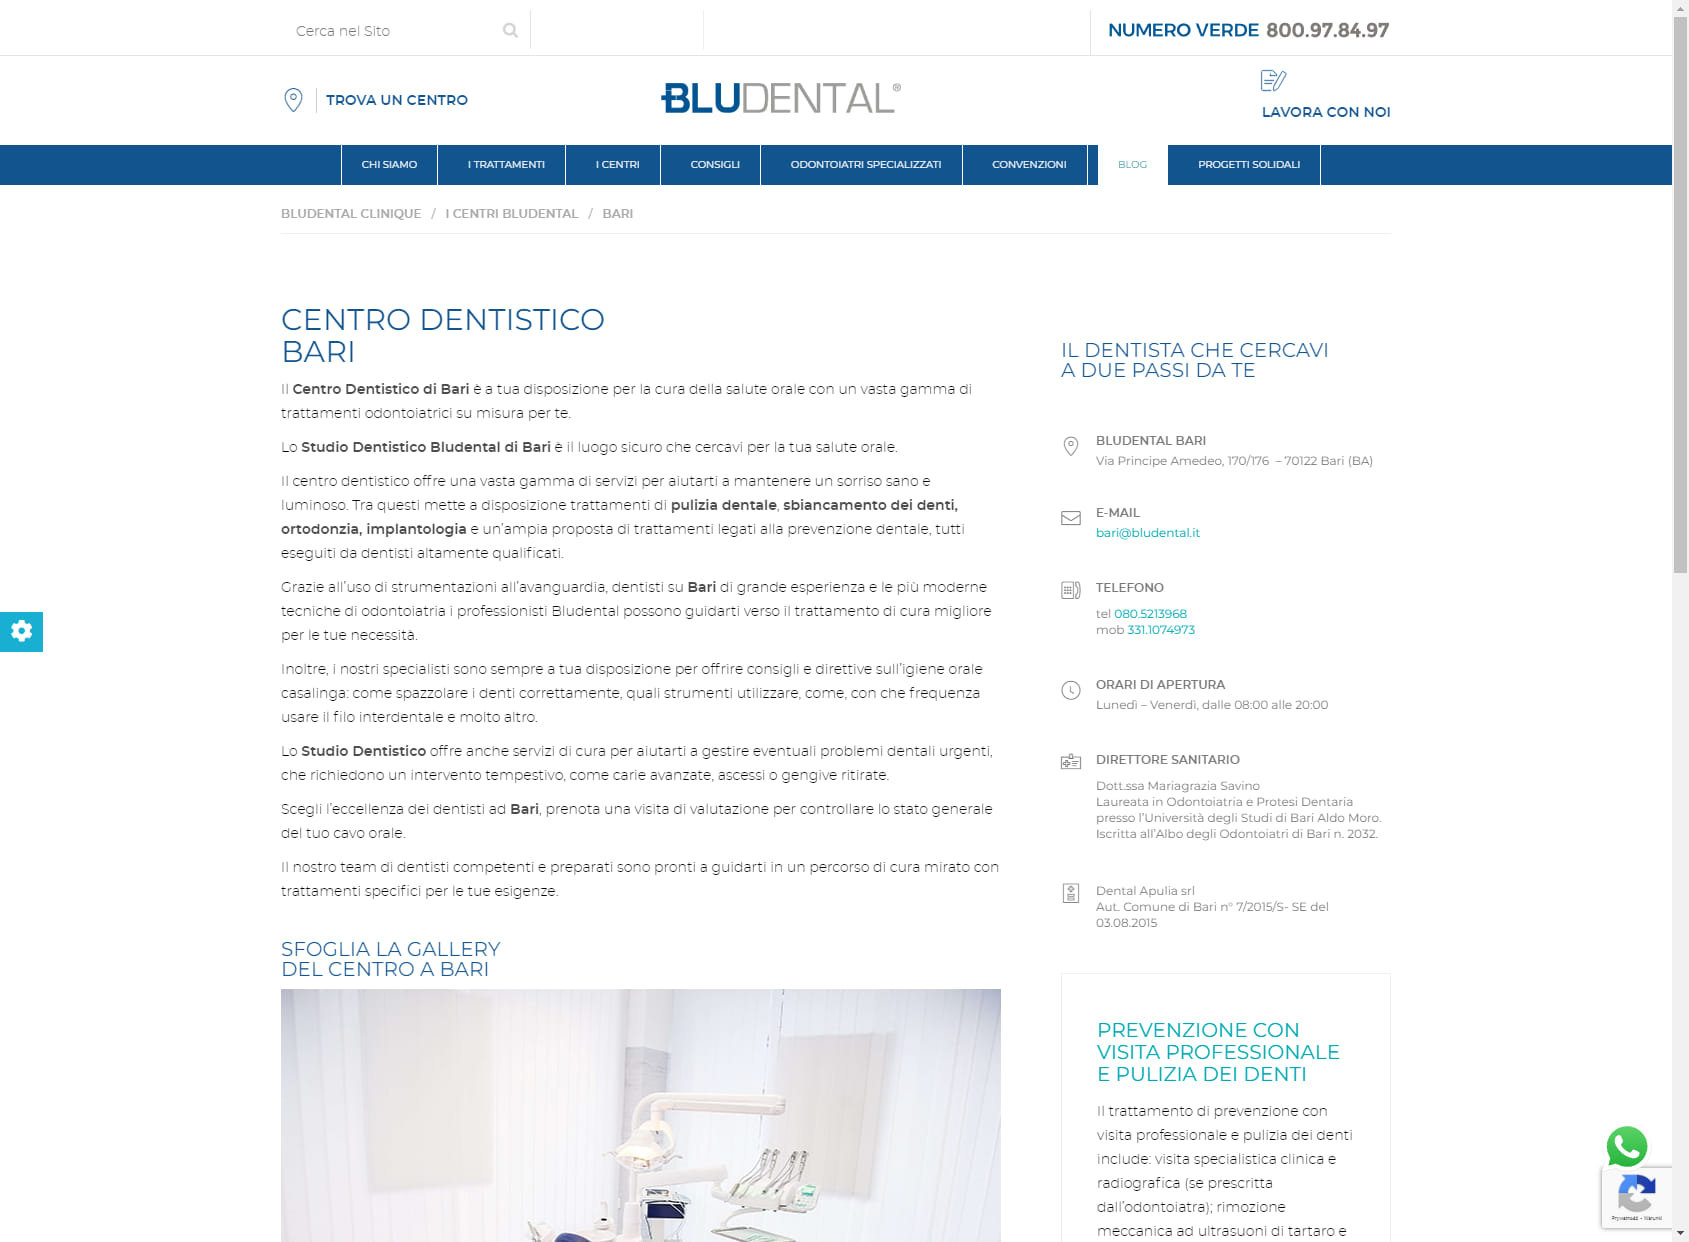 Bludental Clinique - Bari